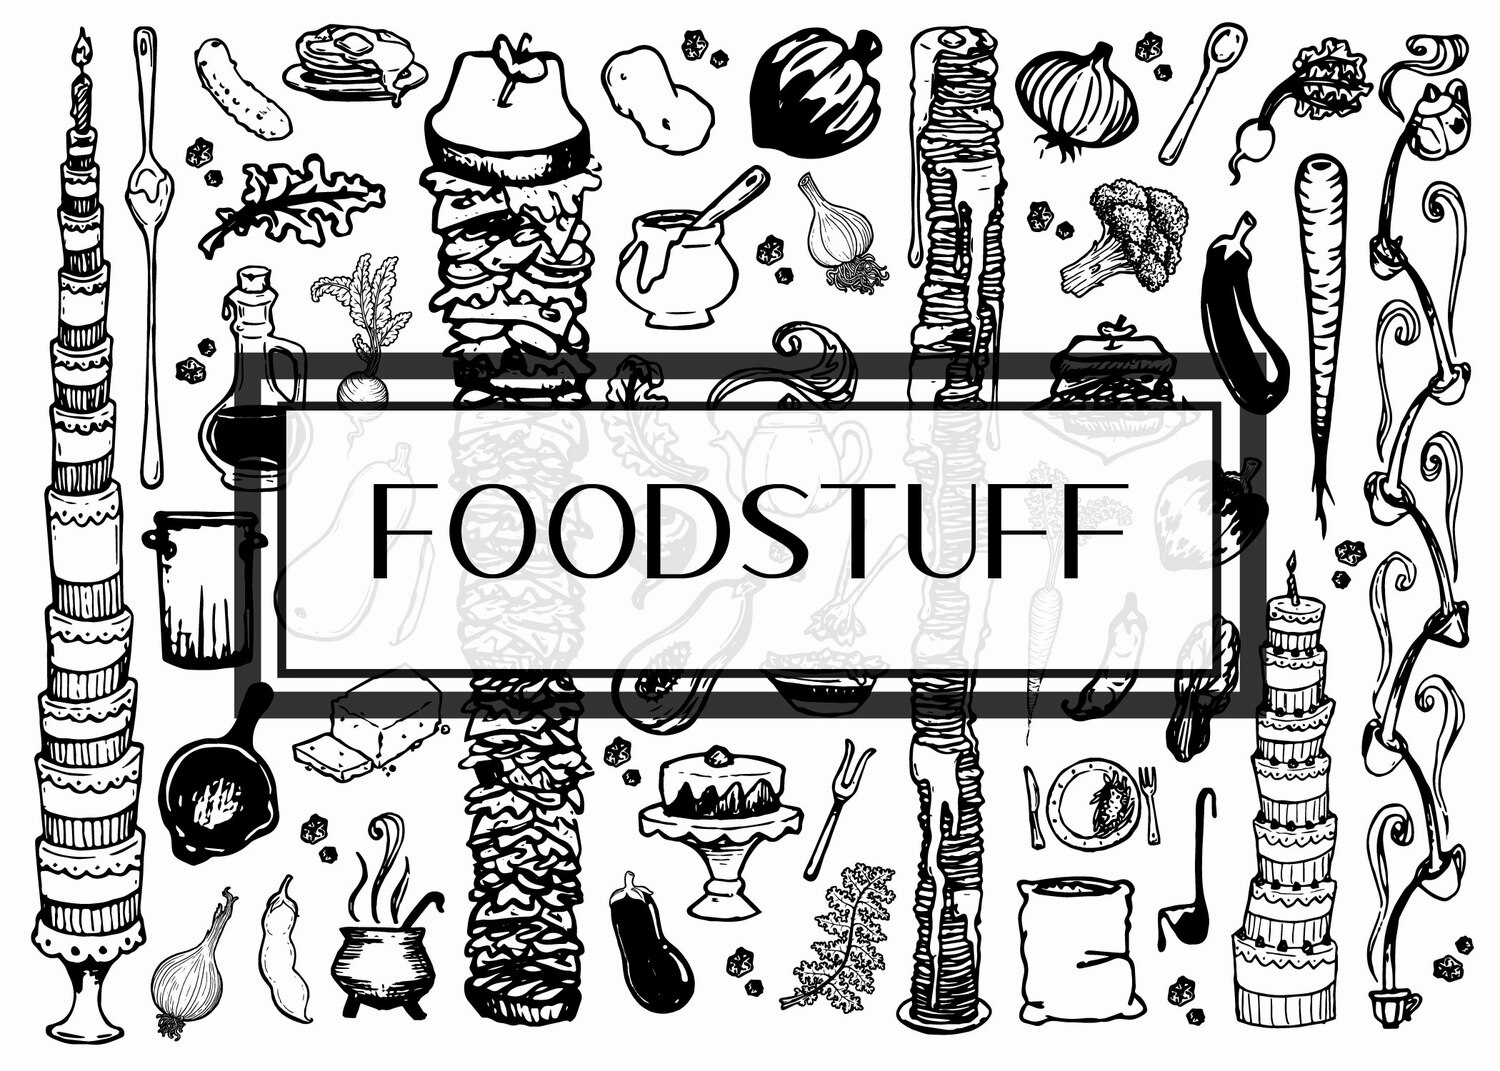 Foodstuff Illustration Set